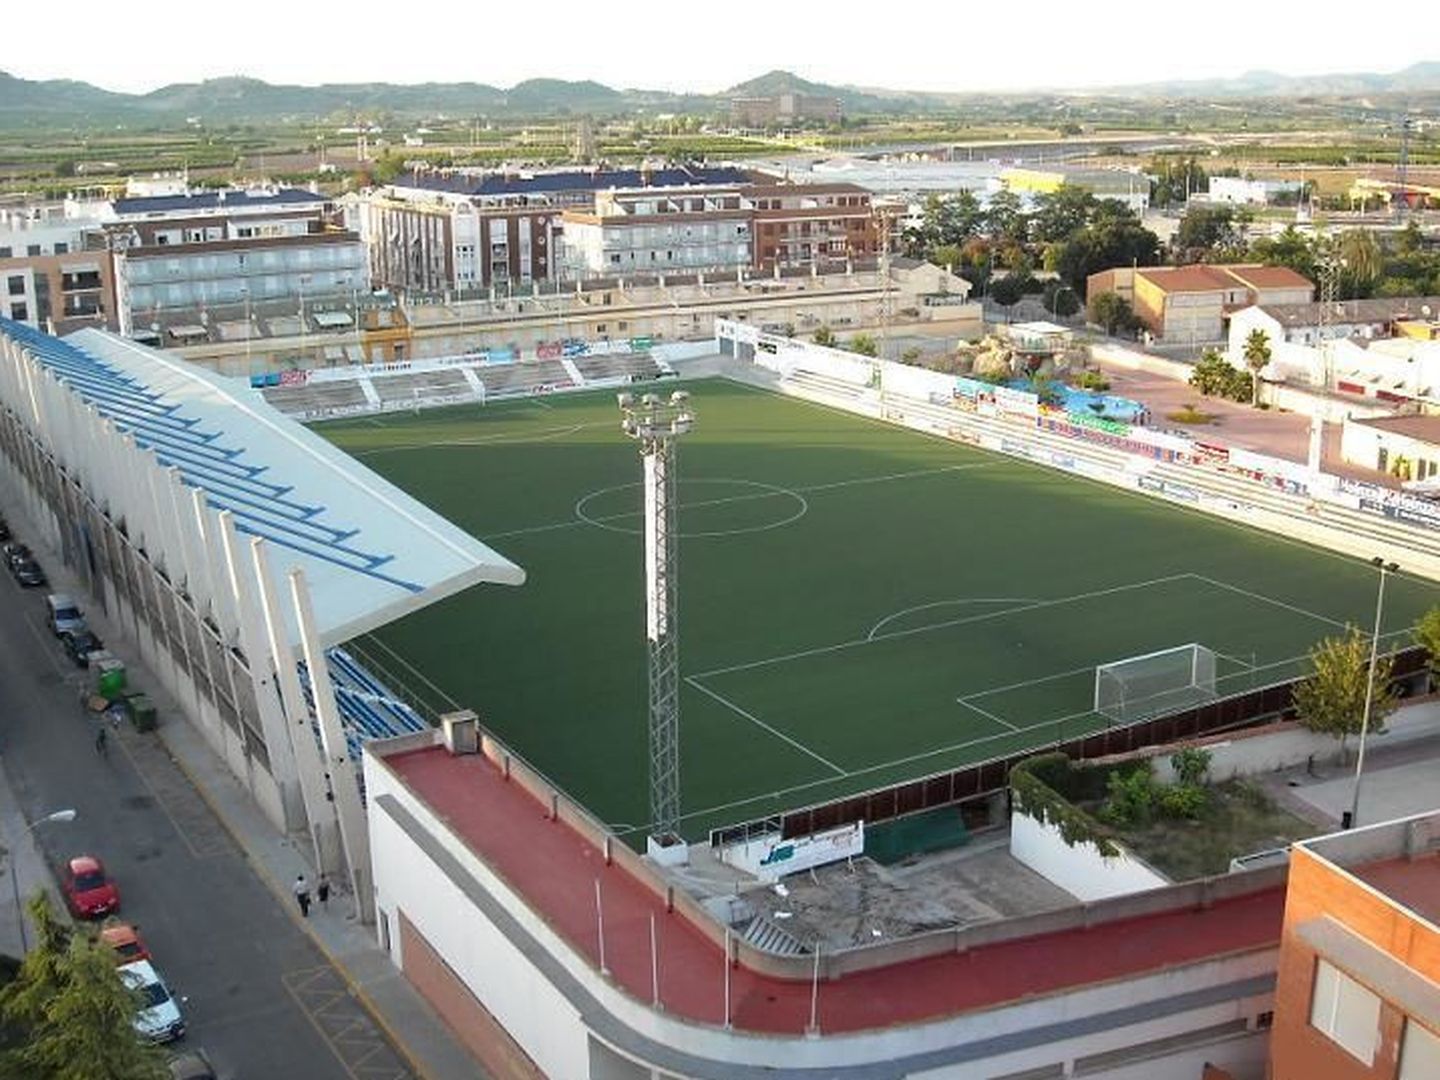 El campo de fútbol del Olímpic de Xàtiva, cuya gestión también investiga Anticorrupción. (C.D. Olímpic)